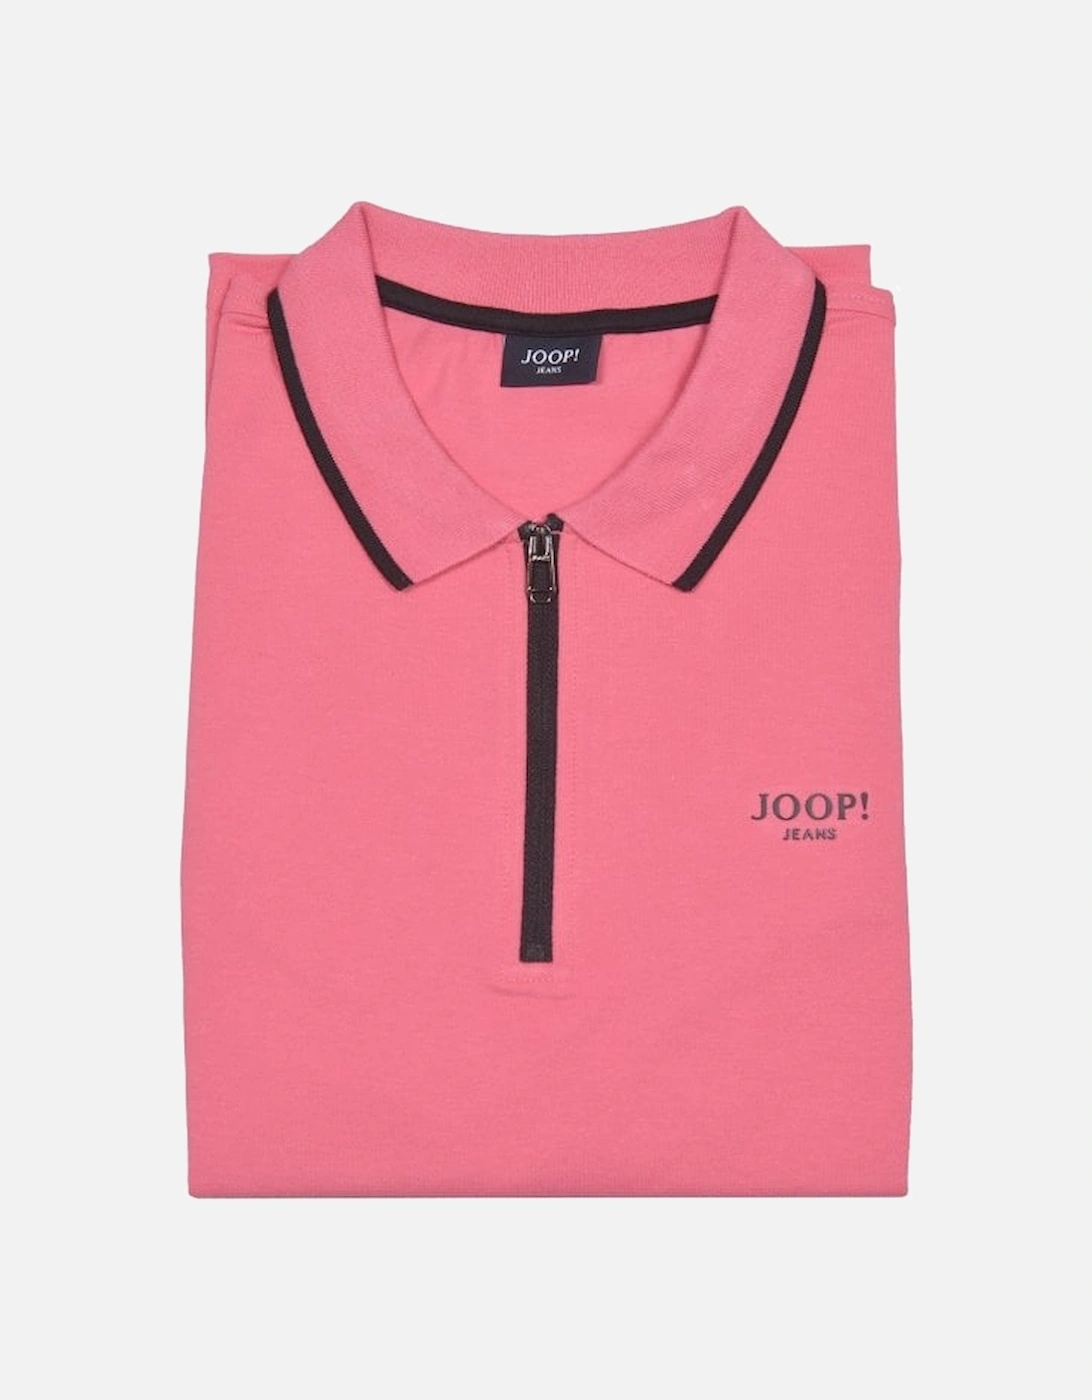 Jeans Qtr Zip Contrast Pique Polo Shirt, Pink/black